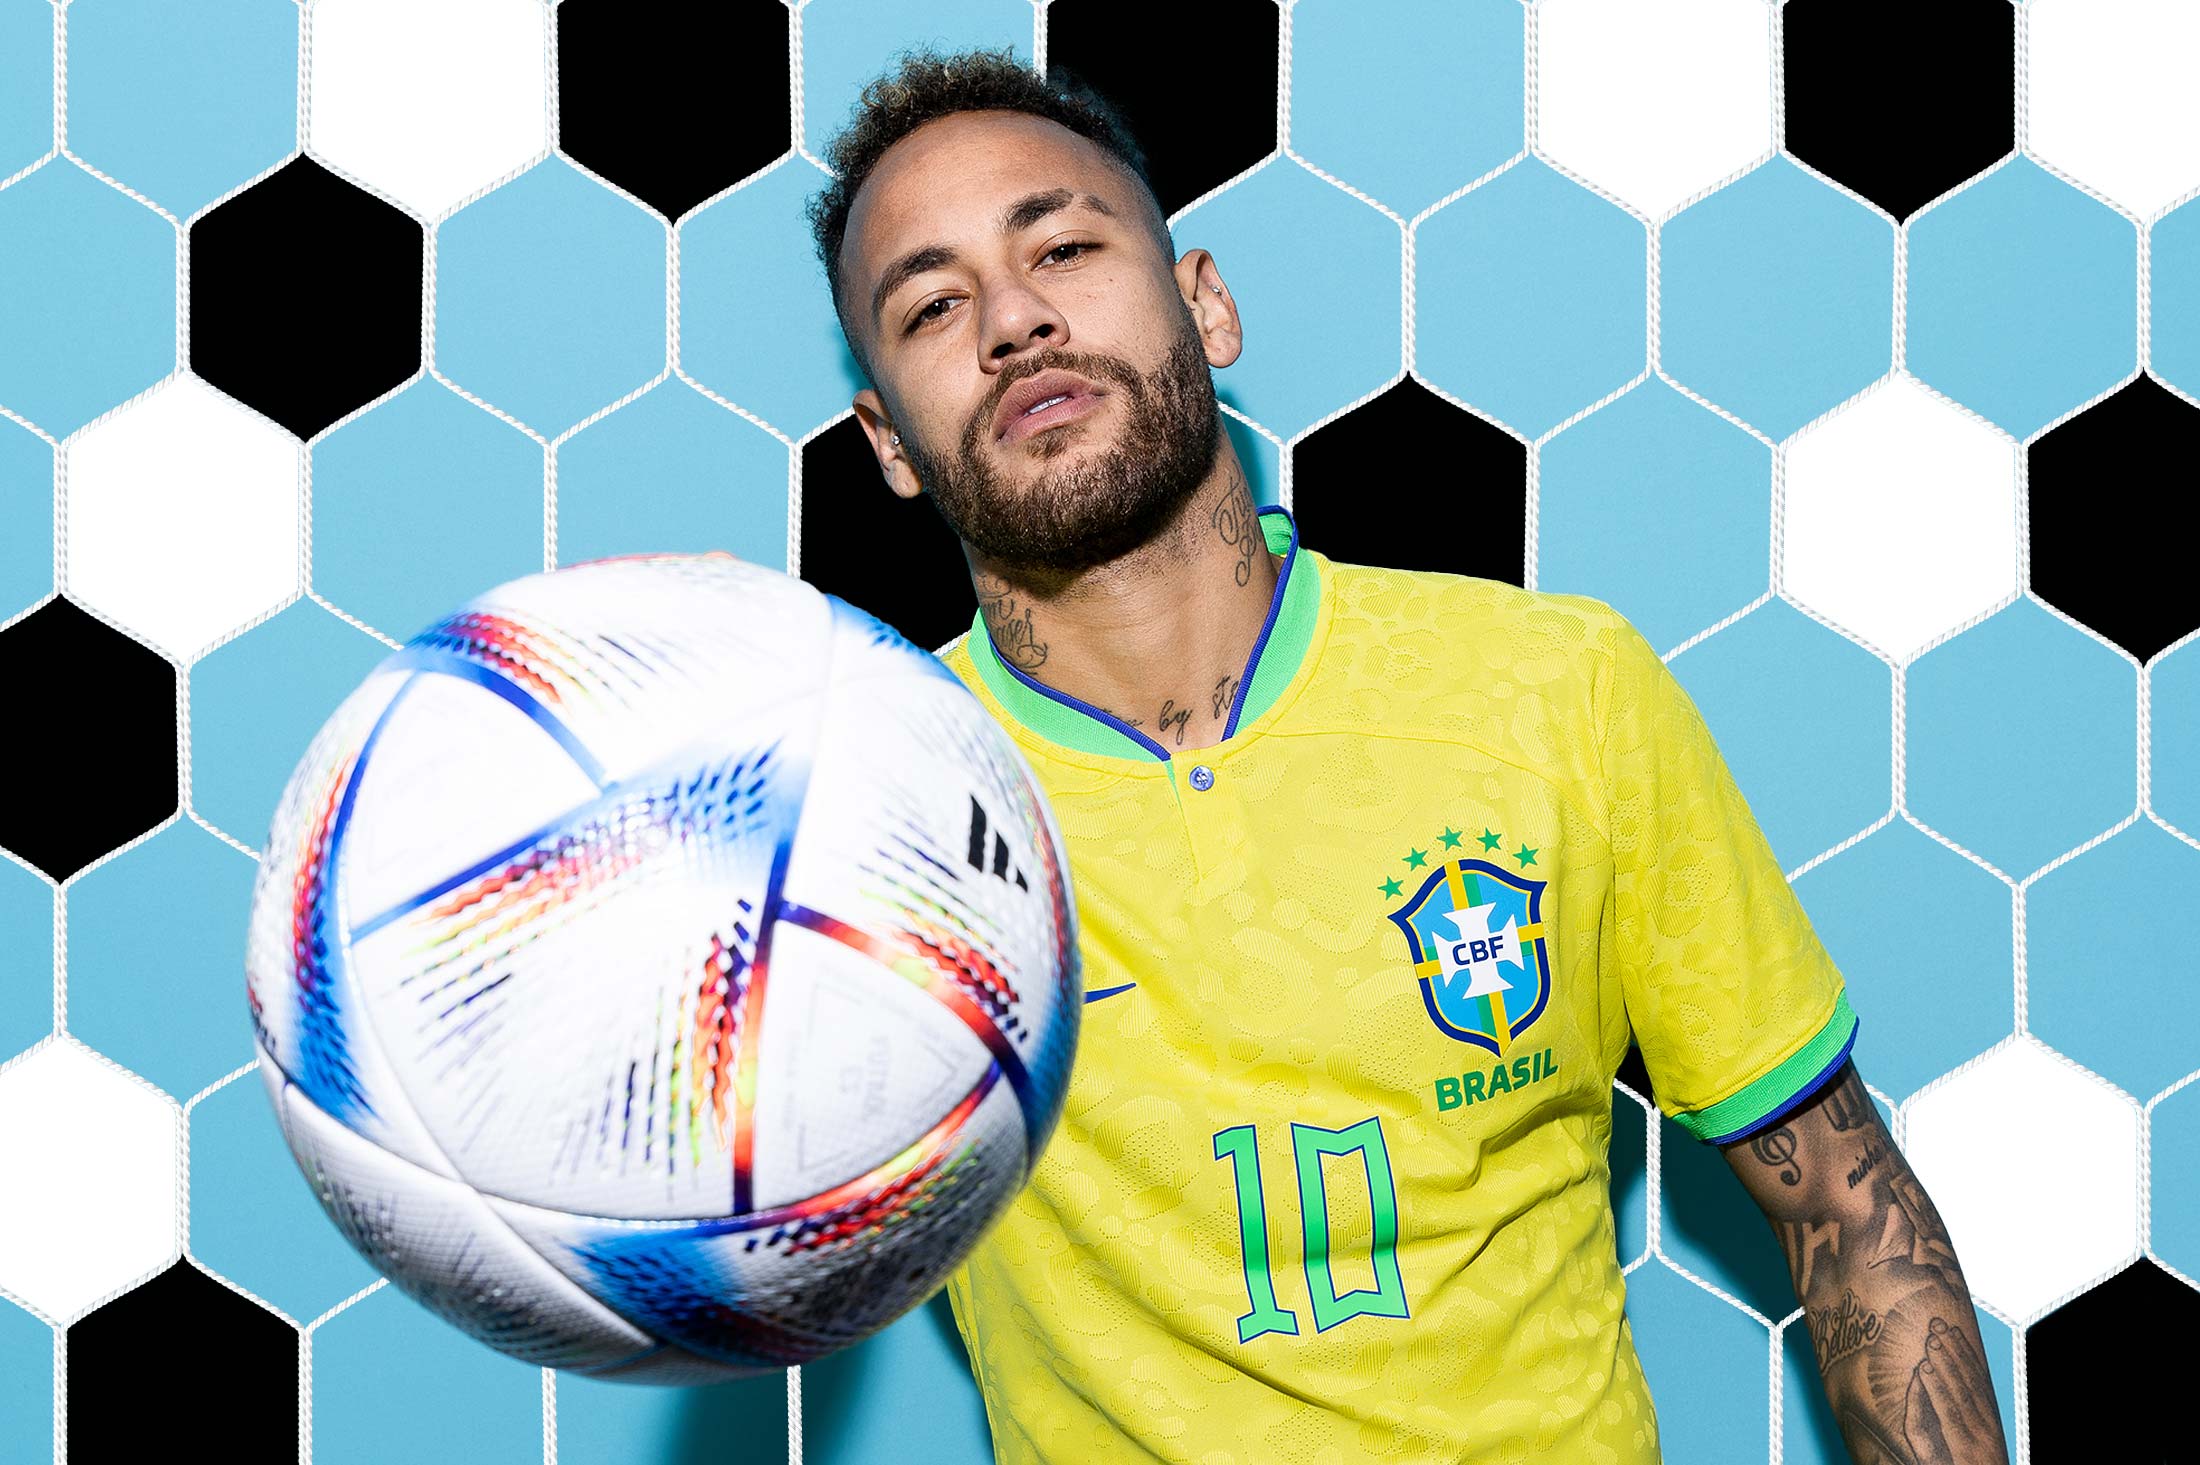 Neymar's incredible dribbles in Brazil's kit